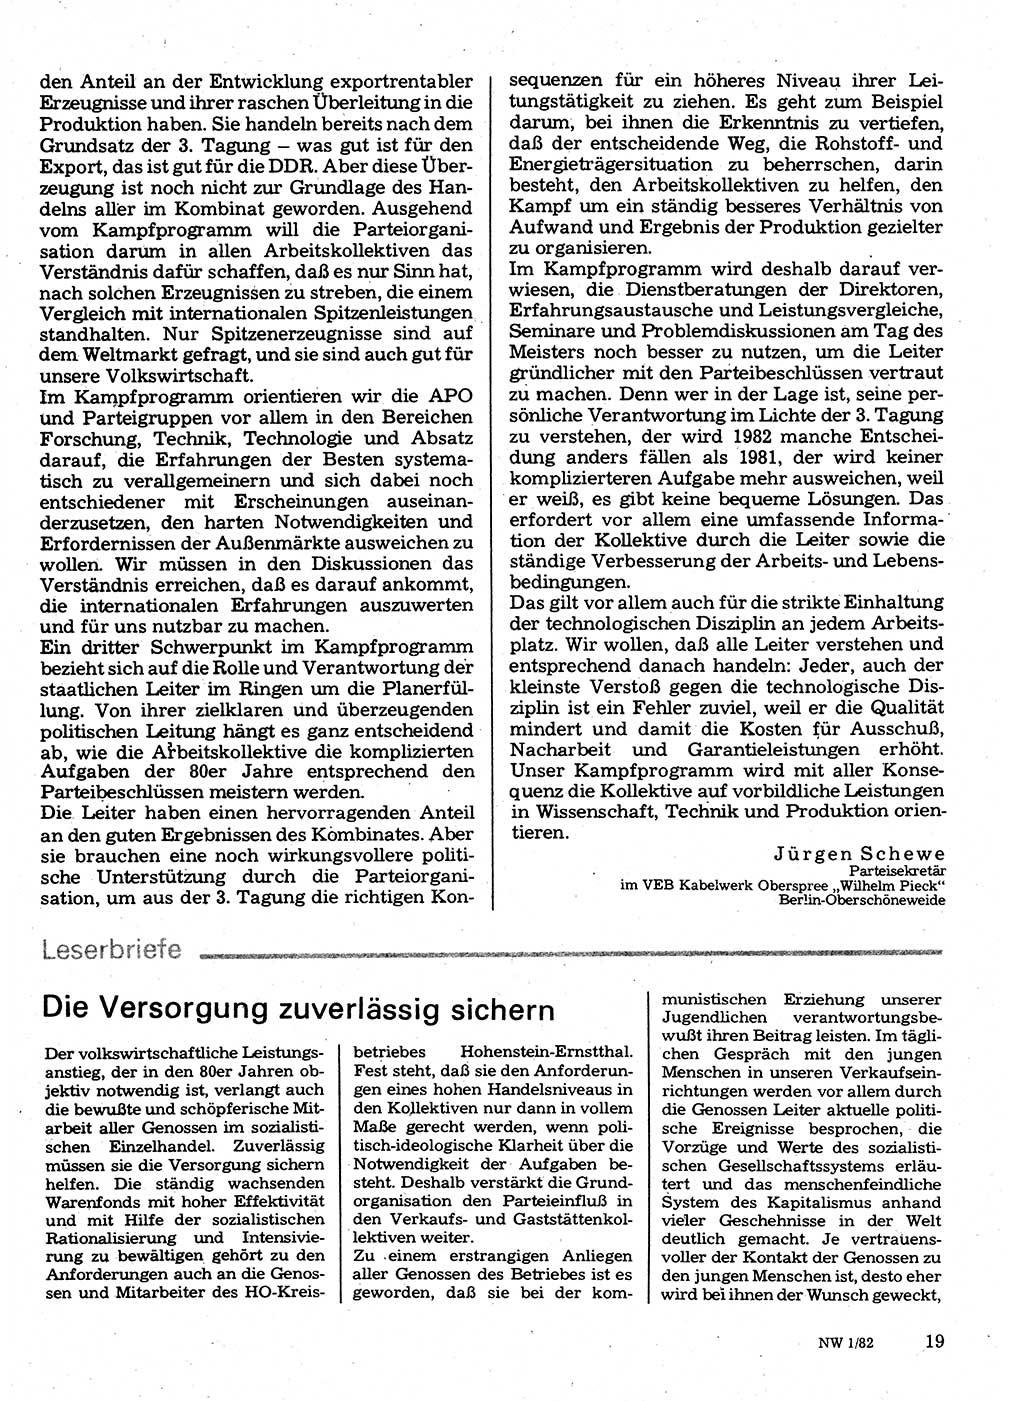 Neuer Weg (NW), Organ des Zentralkomitees (ZK) der SED (Sozialistische Einheitspartei Deutschlands) für Fragen des Parteilebens, 37. Jahrgang [Deutsche Demokratische Republik (DDR)] 1982, Seite 19 (NW ZK SED DDR 1982, S. 19)